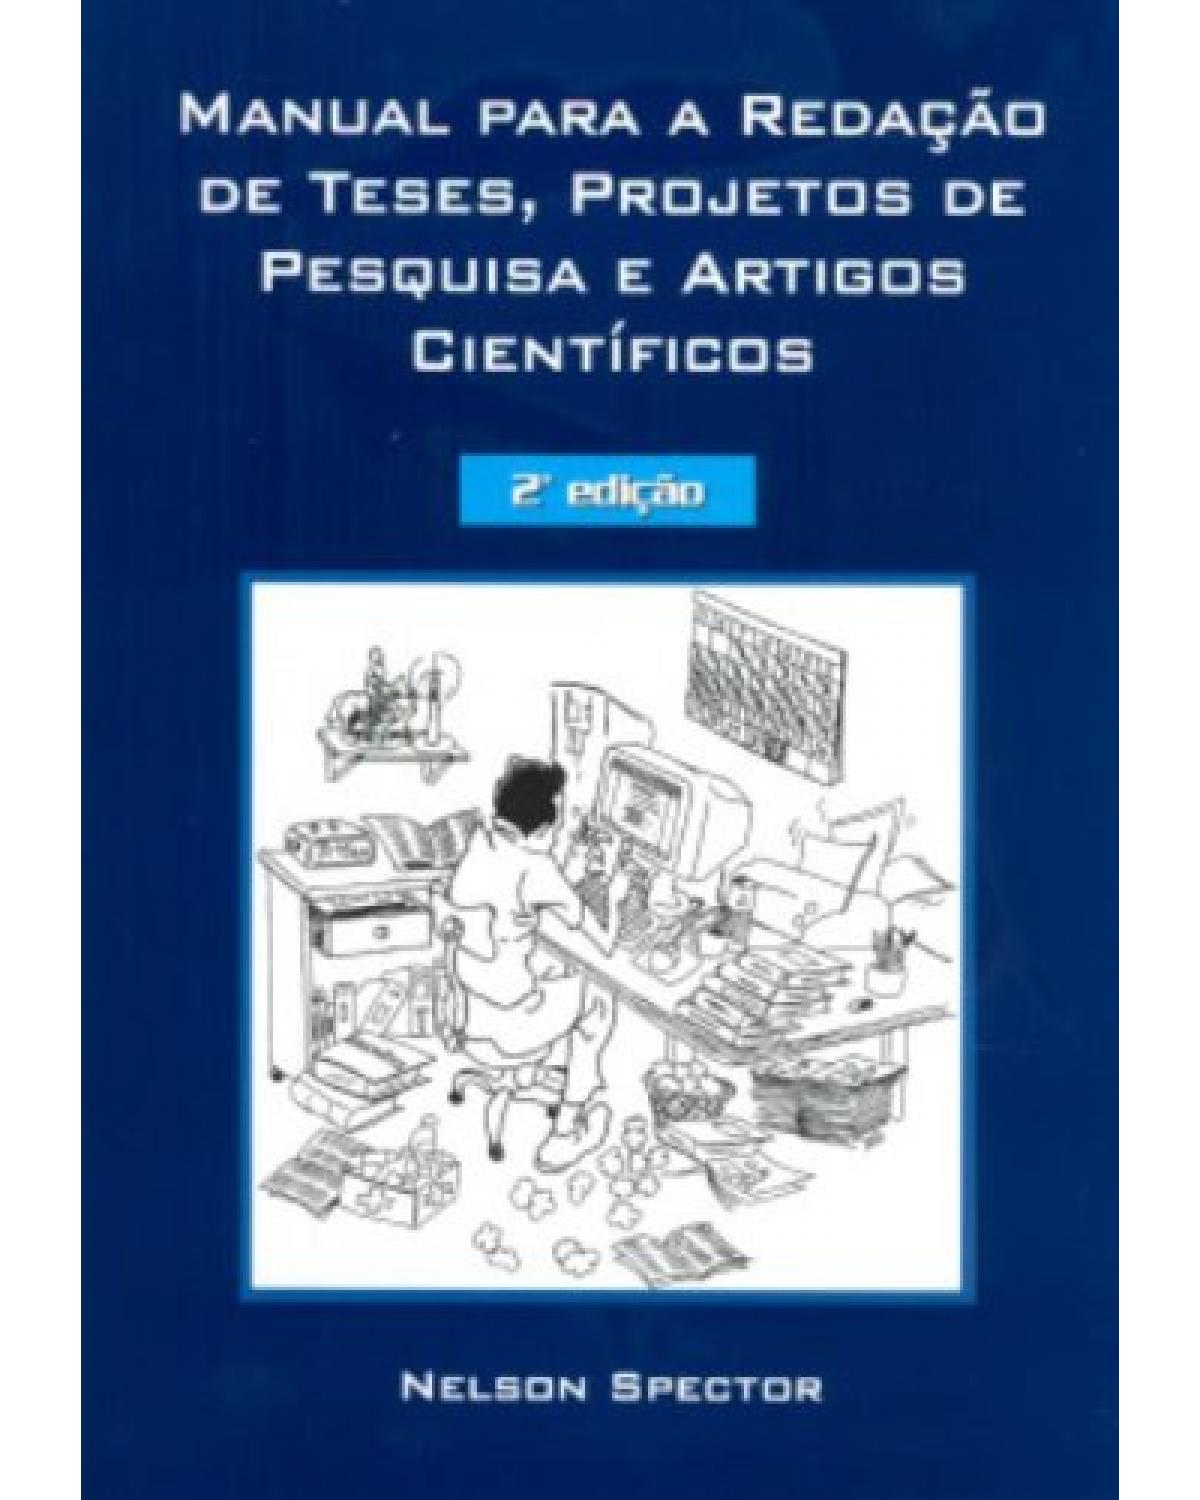 Manual para redação de teses, projetos de pesquisa e artigos científicos - 2ª Edição | 2002